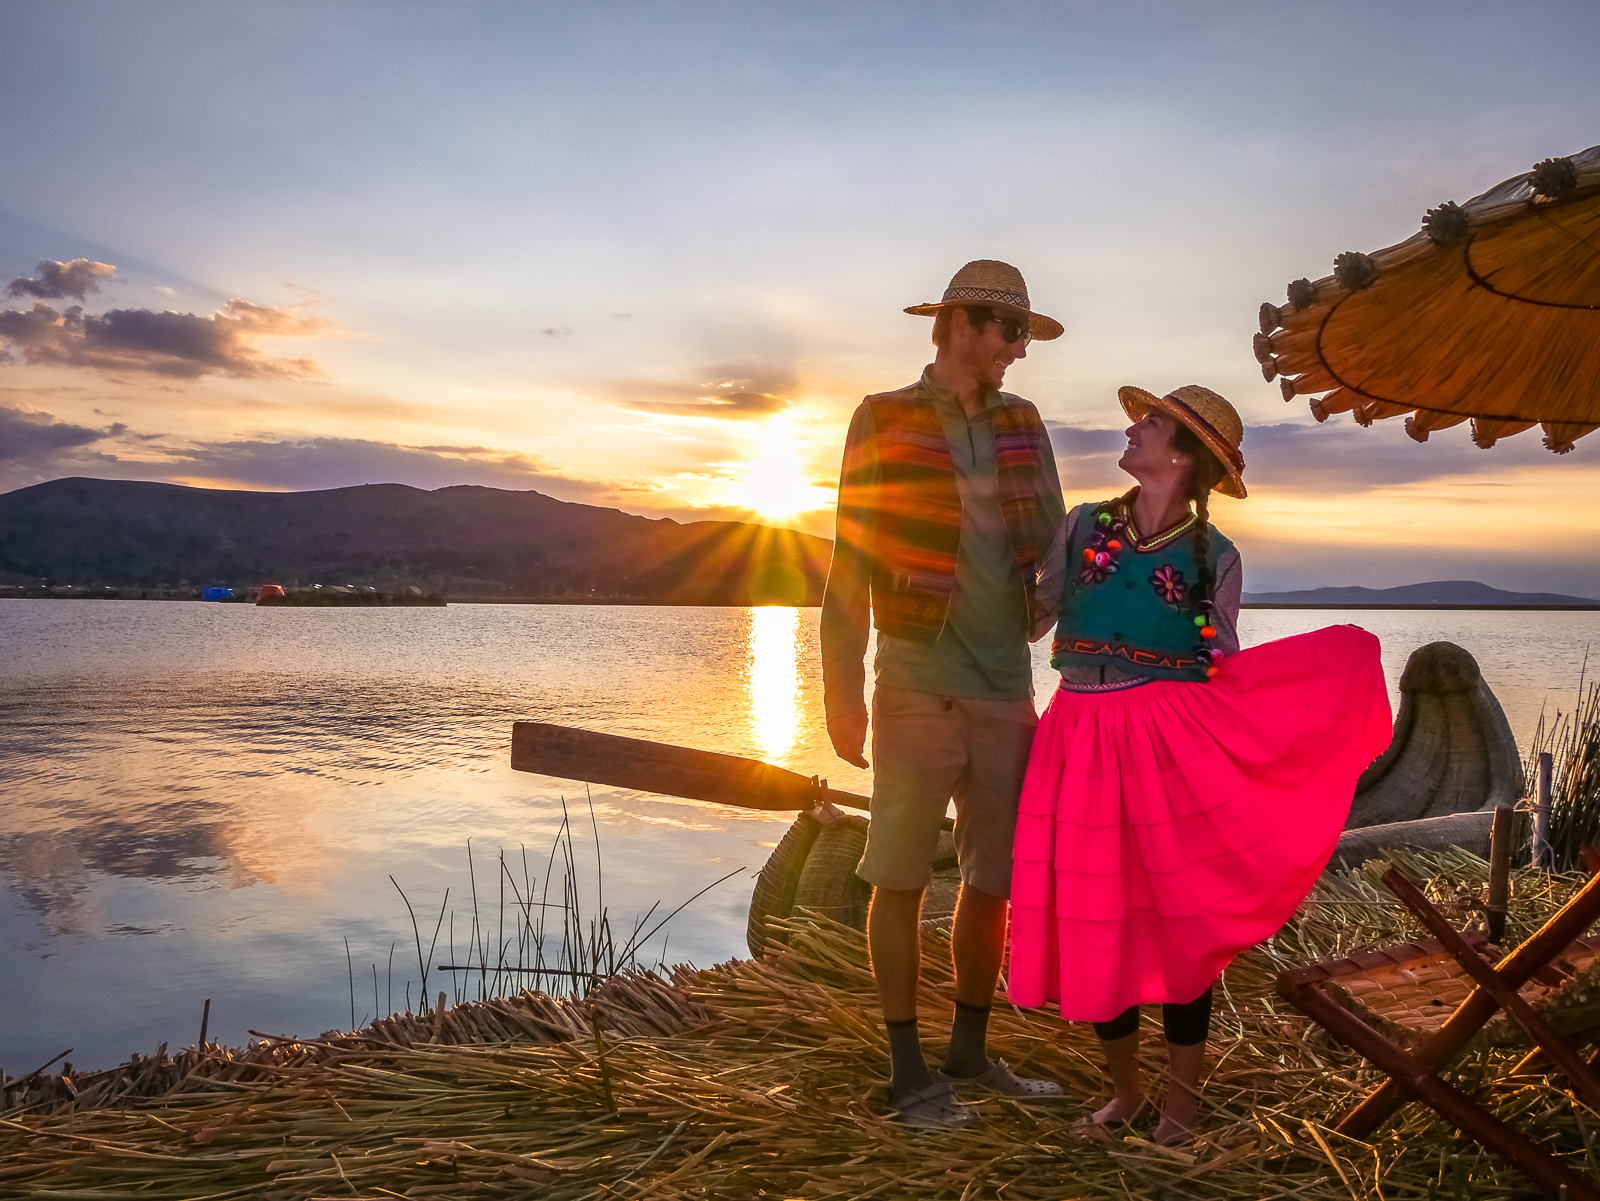 Floating island sunset Lake Titicaca Peru